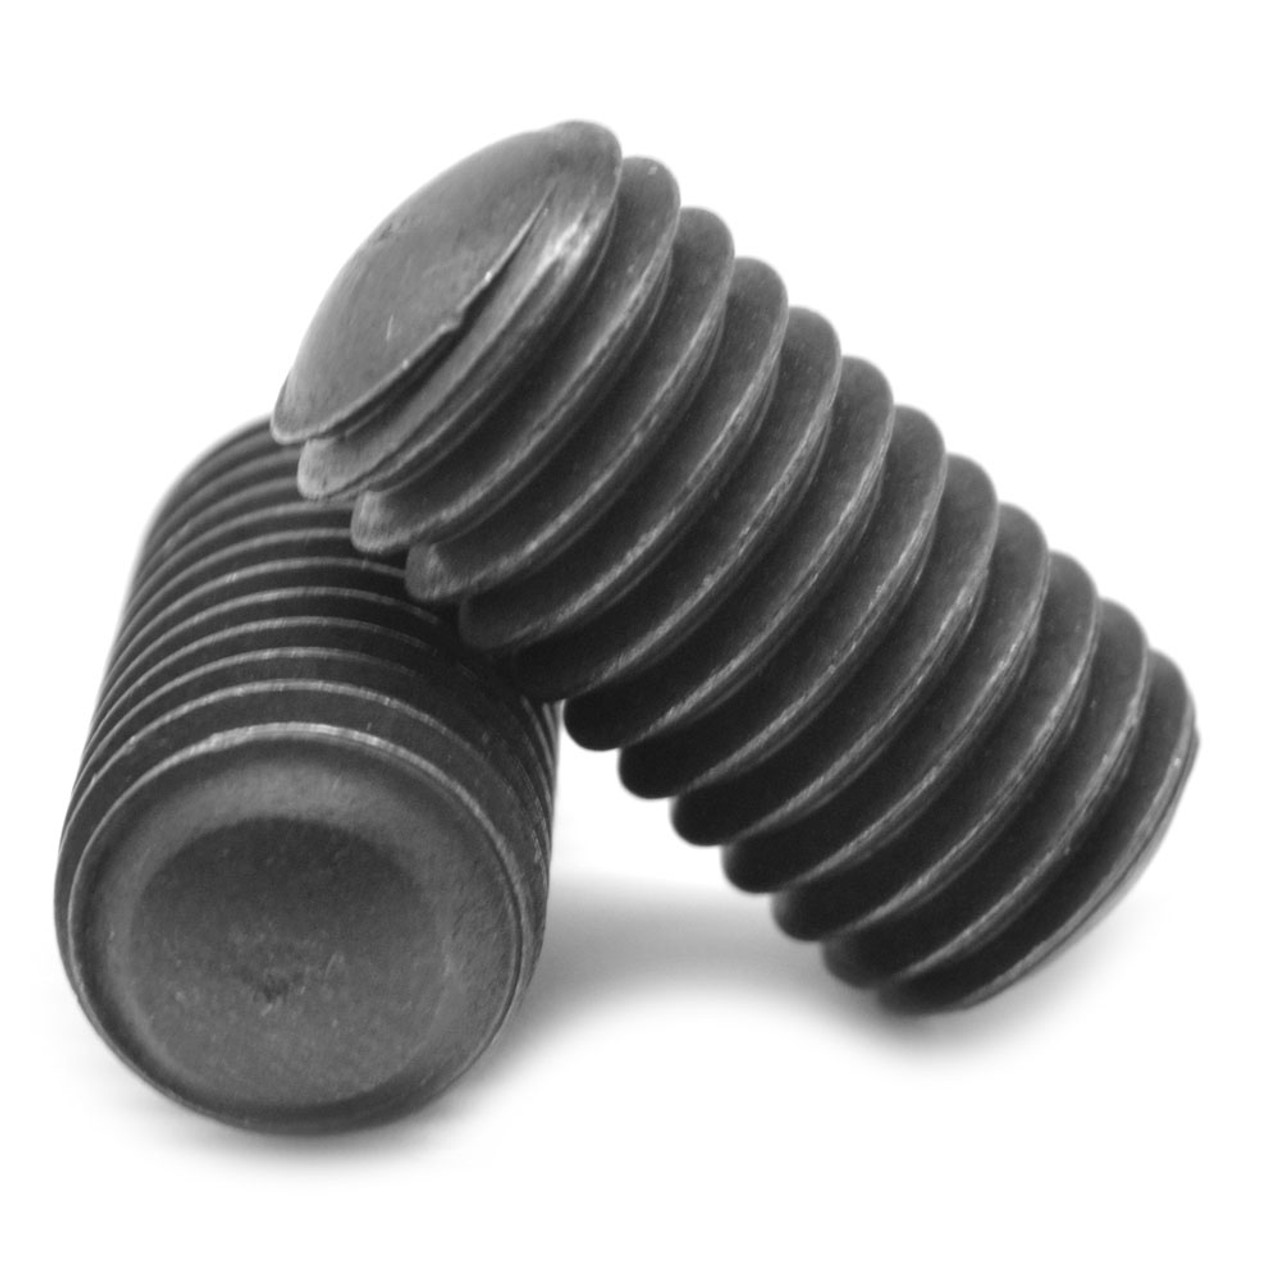 5/8"-11 x 1 1/4" Coarse Thread Socket Set Screw Oval Point Alloy Steel Black Oxide